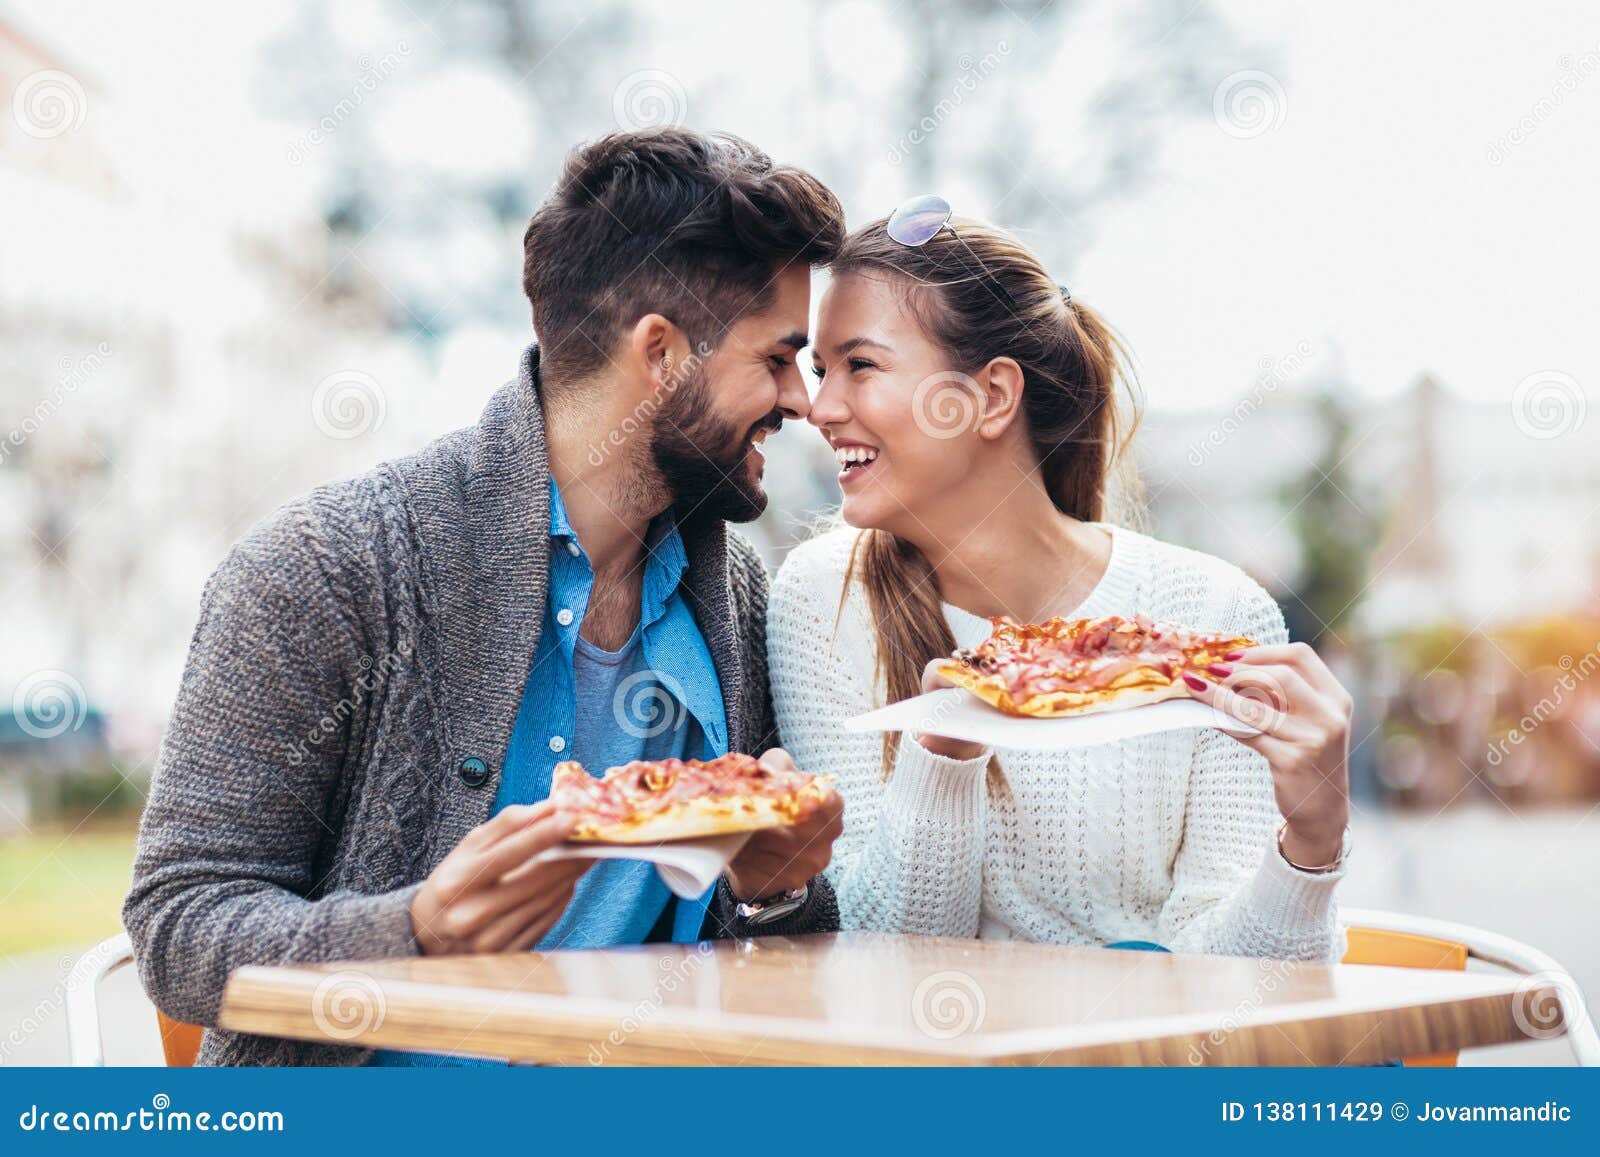 фотосессия пары с пиццей фото 78